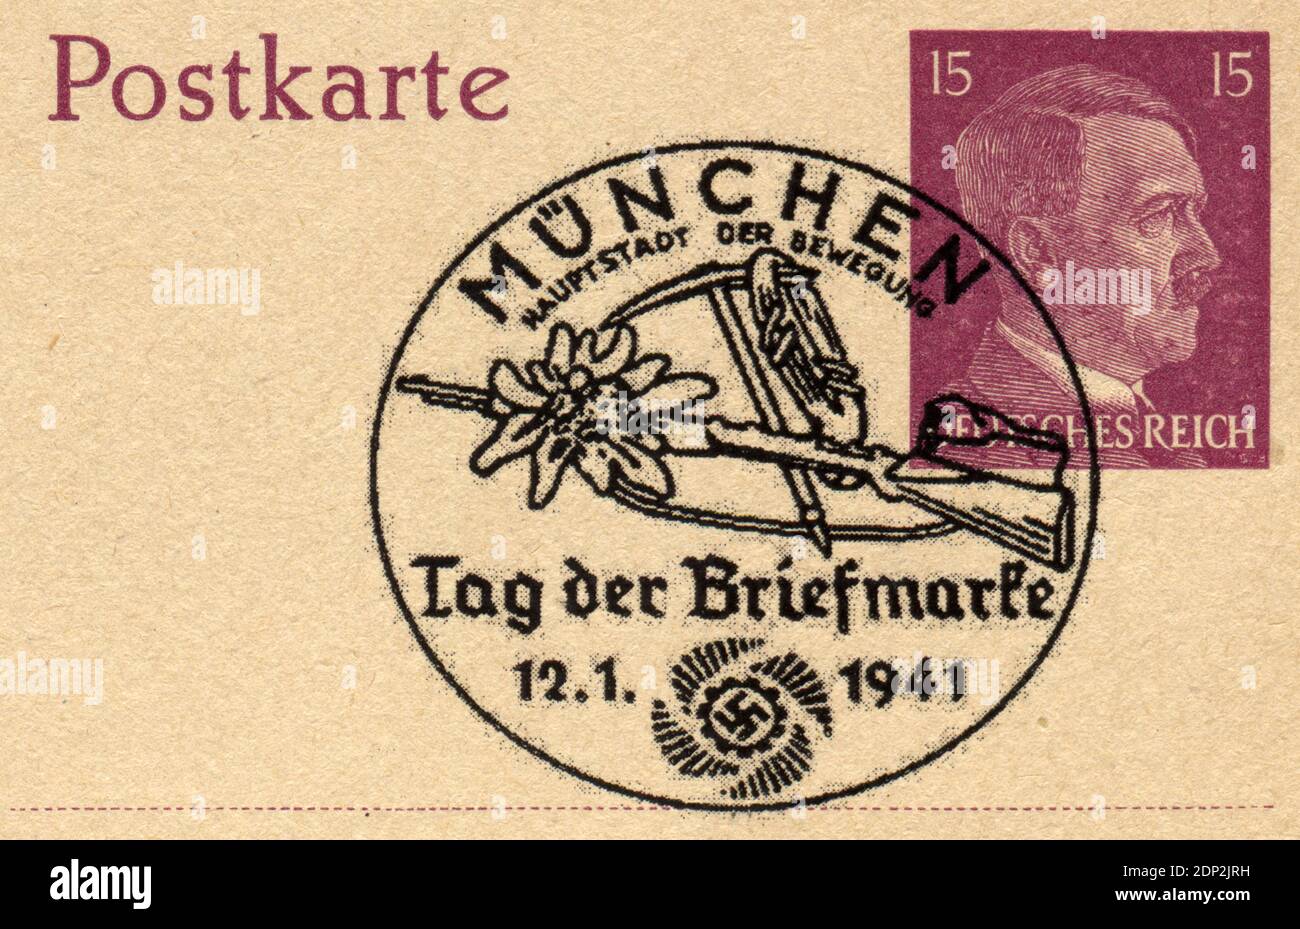 DEUTSCHLAND - UM 1941: Briefmarke gedruckt in Deutschland, zeigt das Porträt von Adolf Hitler - einem deutschen Politiker, Führer von Deutschland und der Nazi-Partei, um 1941 Stockfoto